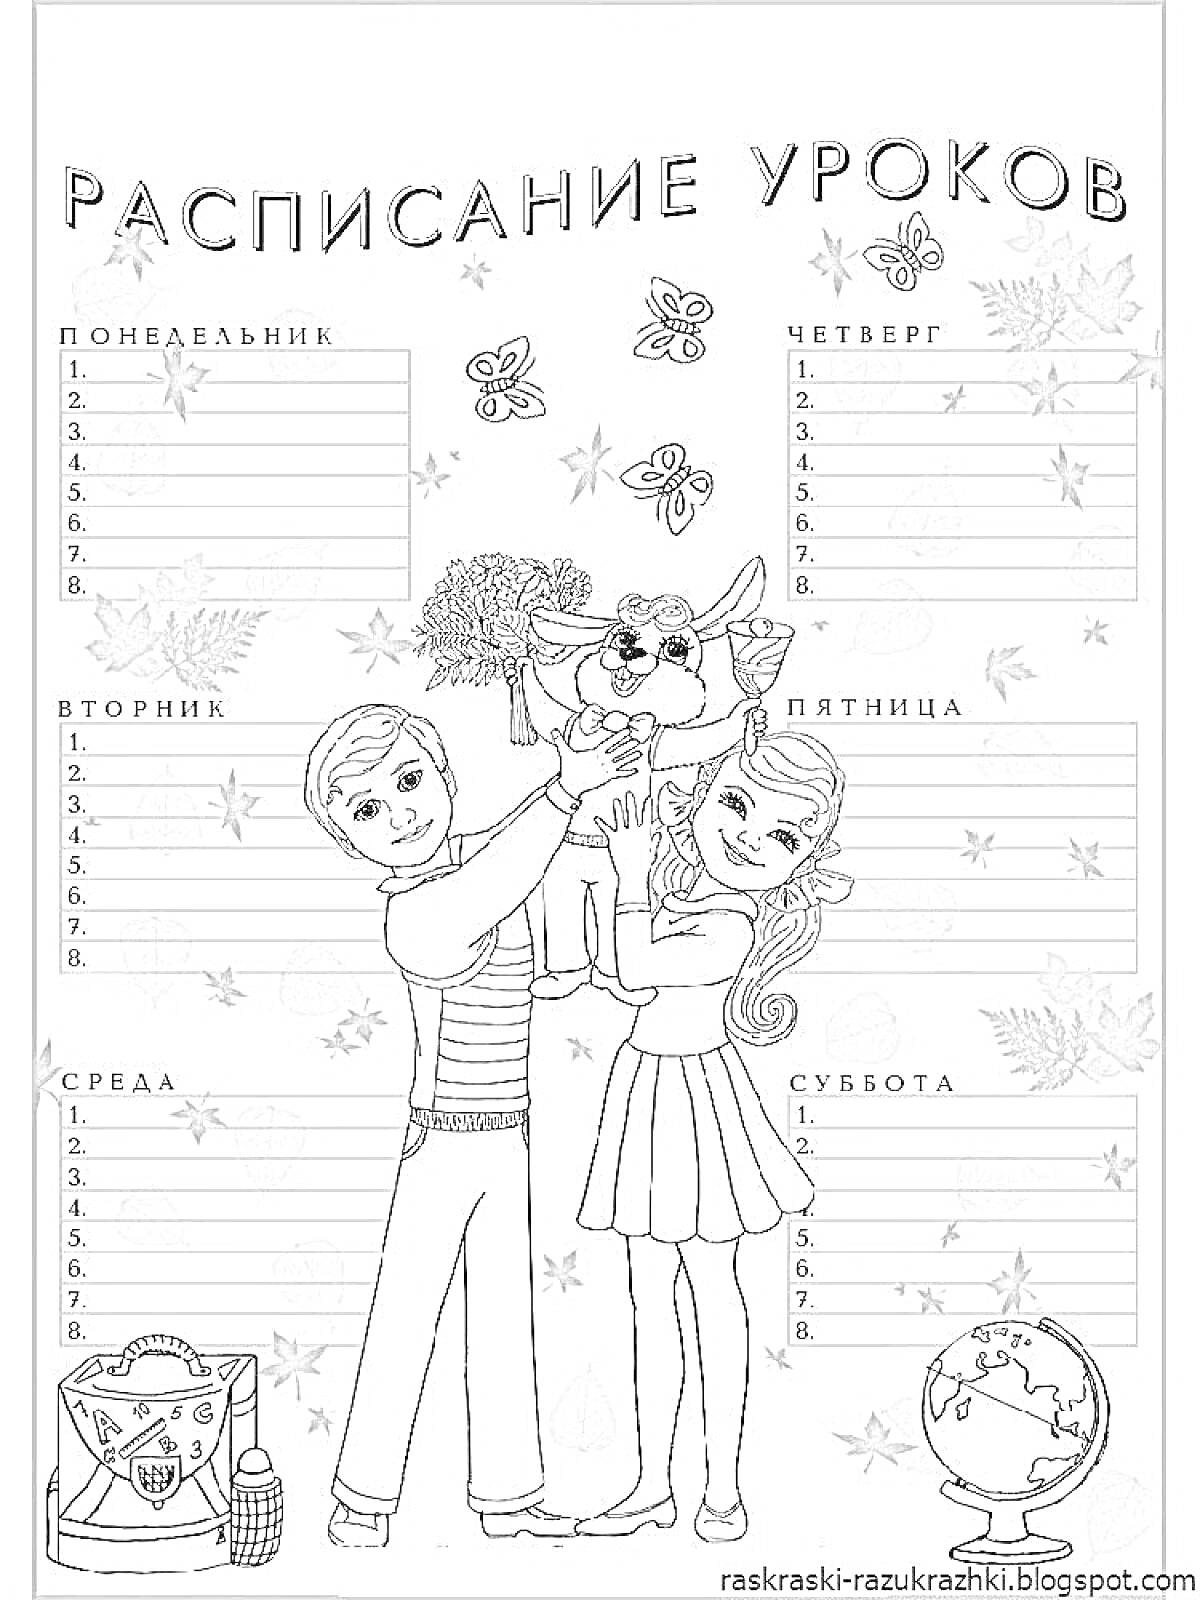 РаскраскаРаскраска расписание для девочек уроков с изображением мальчика и девочки, держащих щенка, бабочек, осенних листьев, совы в академической шапке, глобуса и корзины с канцелярскими принадлежностями